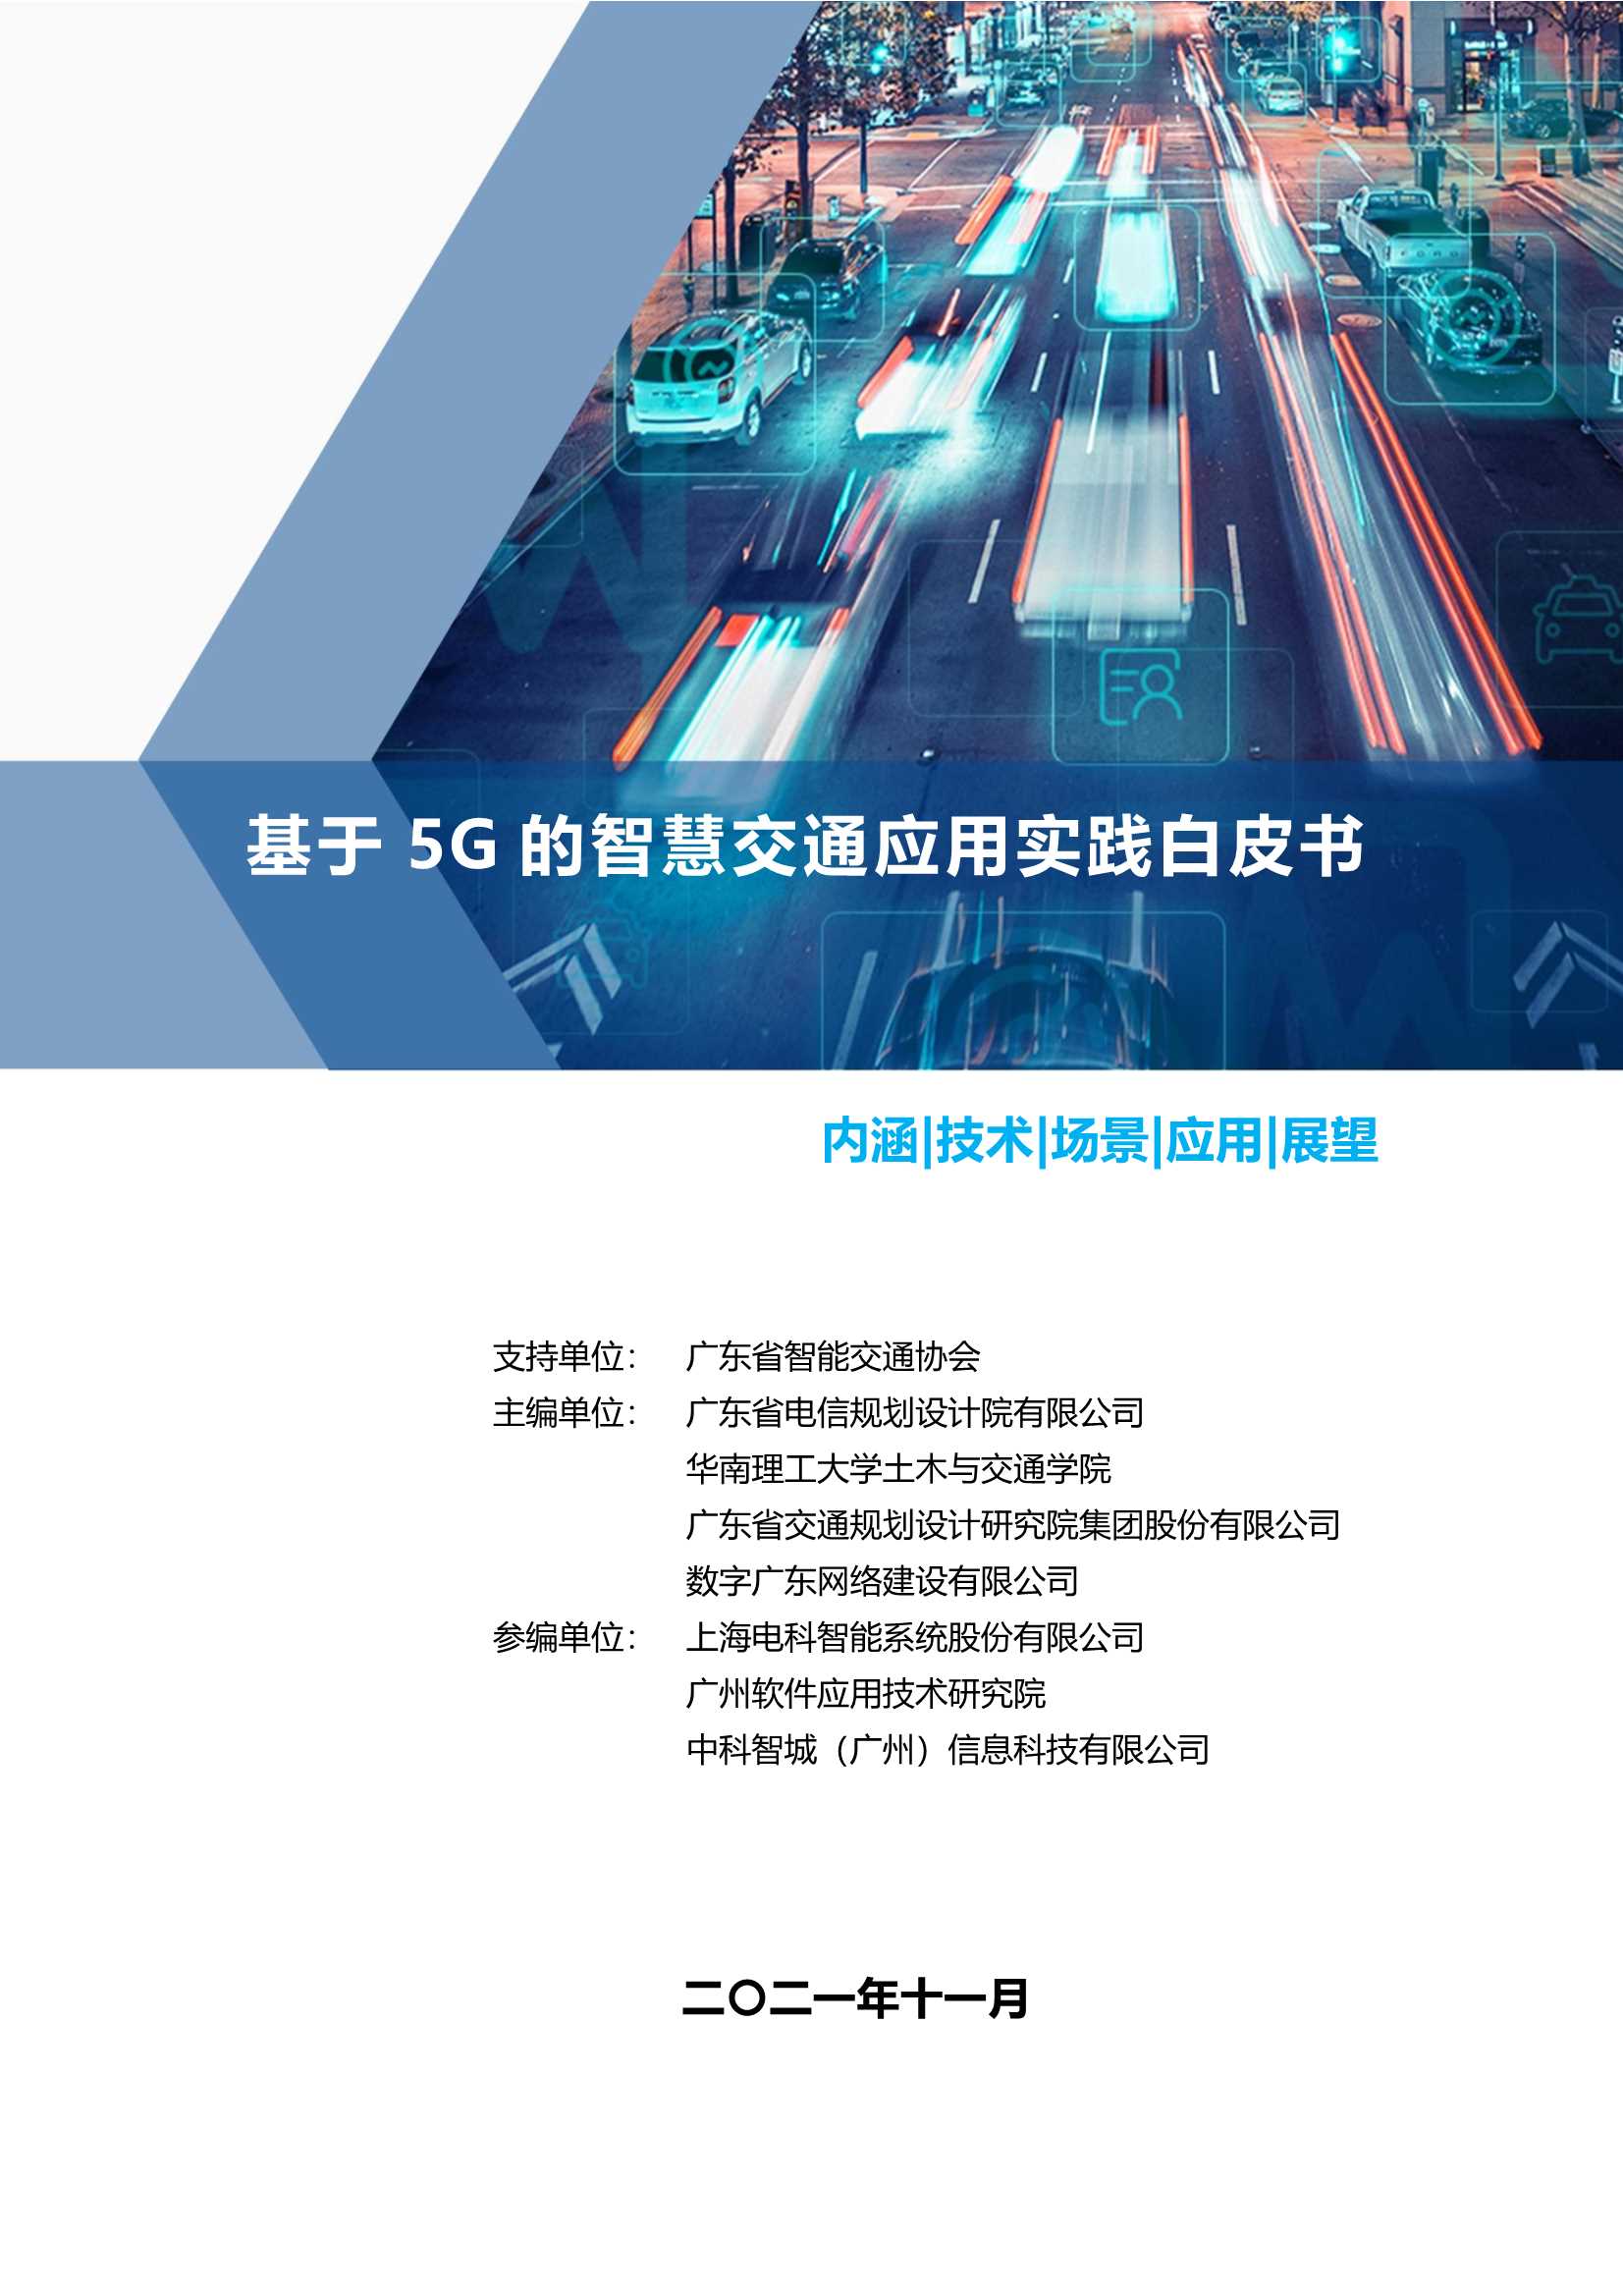 基于5G的智慧交通应用实践白皮书（2021）-2022.03-68页